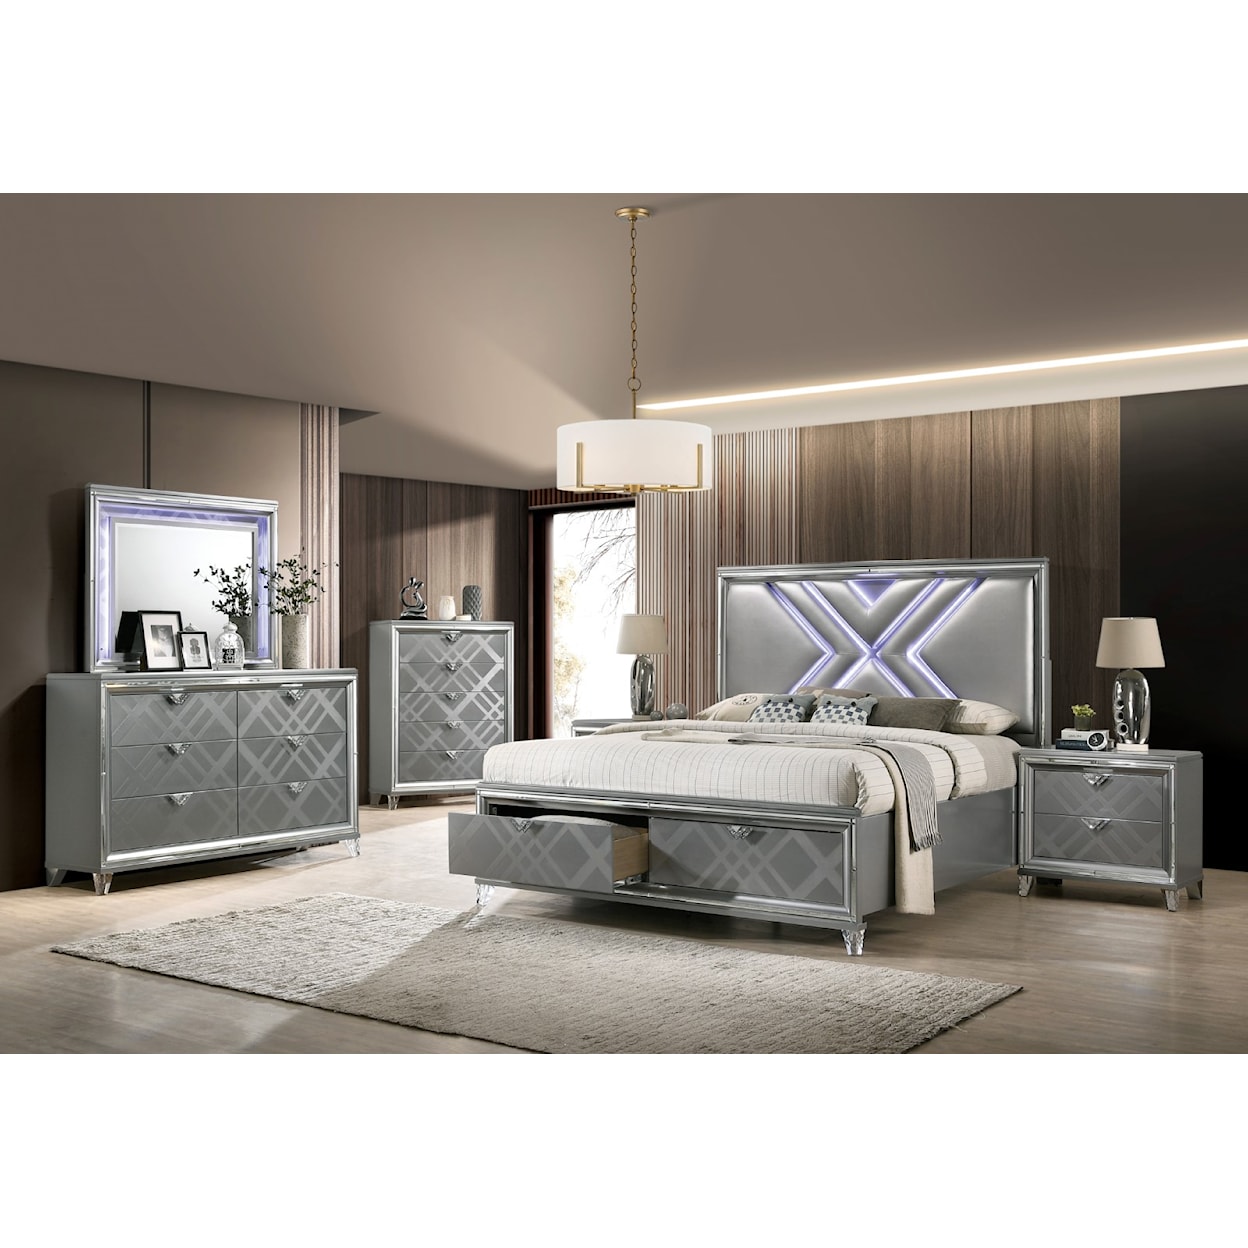 Furniture of America Emmeline King Bed